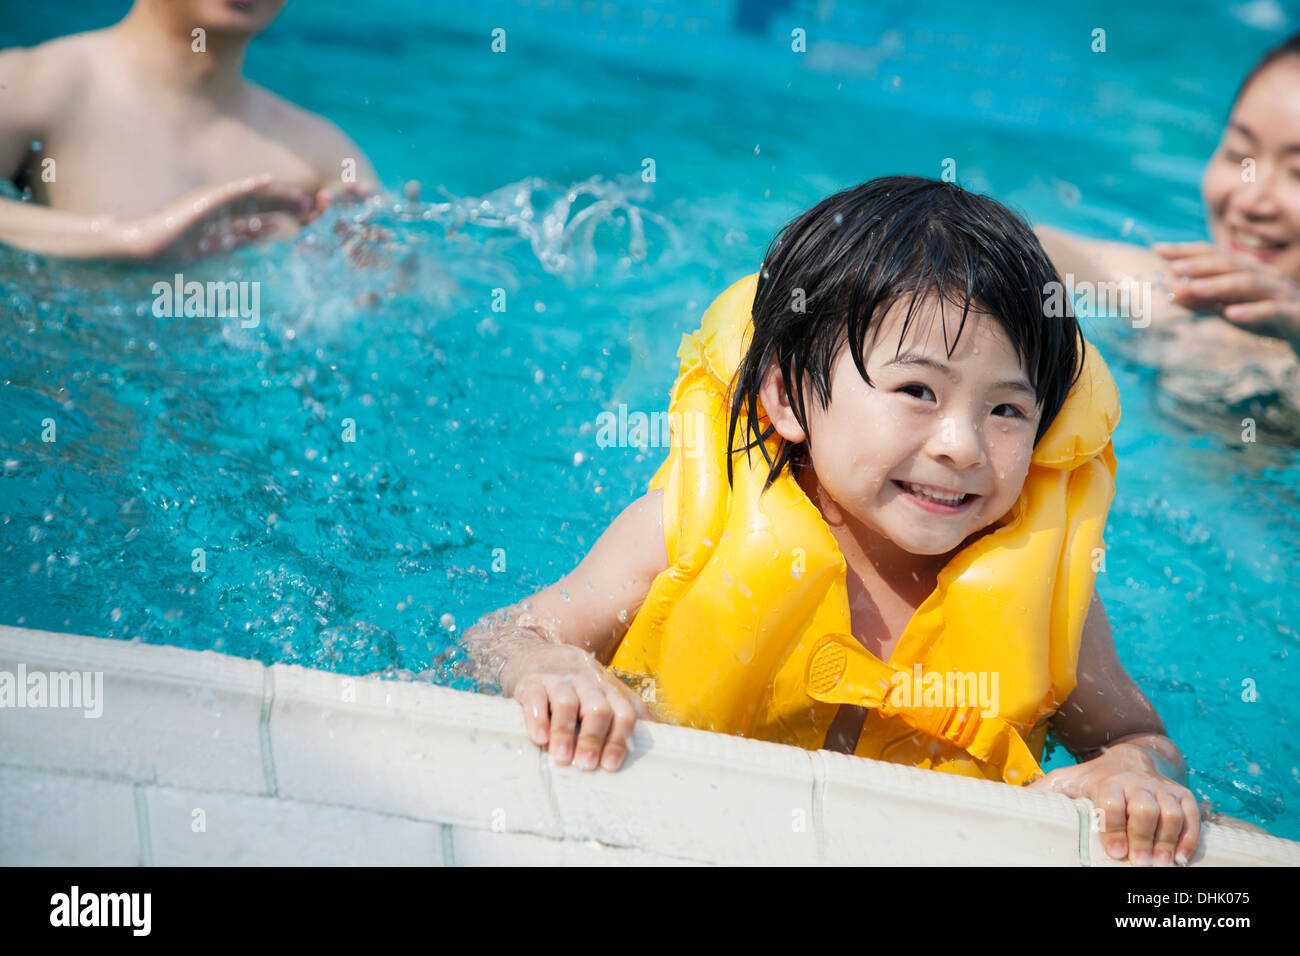 Ritratto del figlio sorridente in acqua e tenendo premuto sul bordo piscine con la famiglia in background Foto Stock